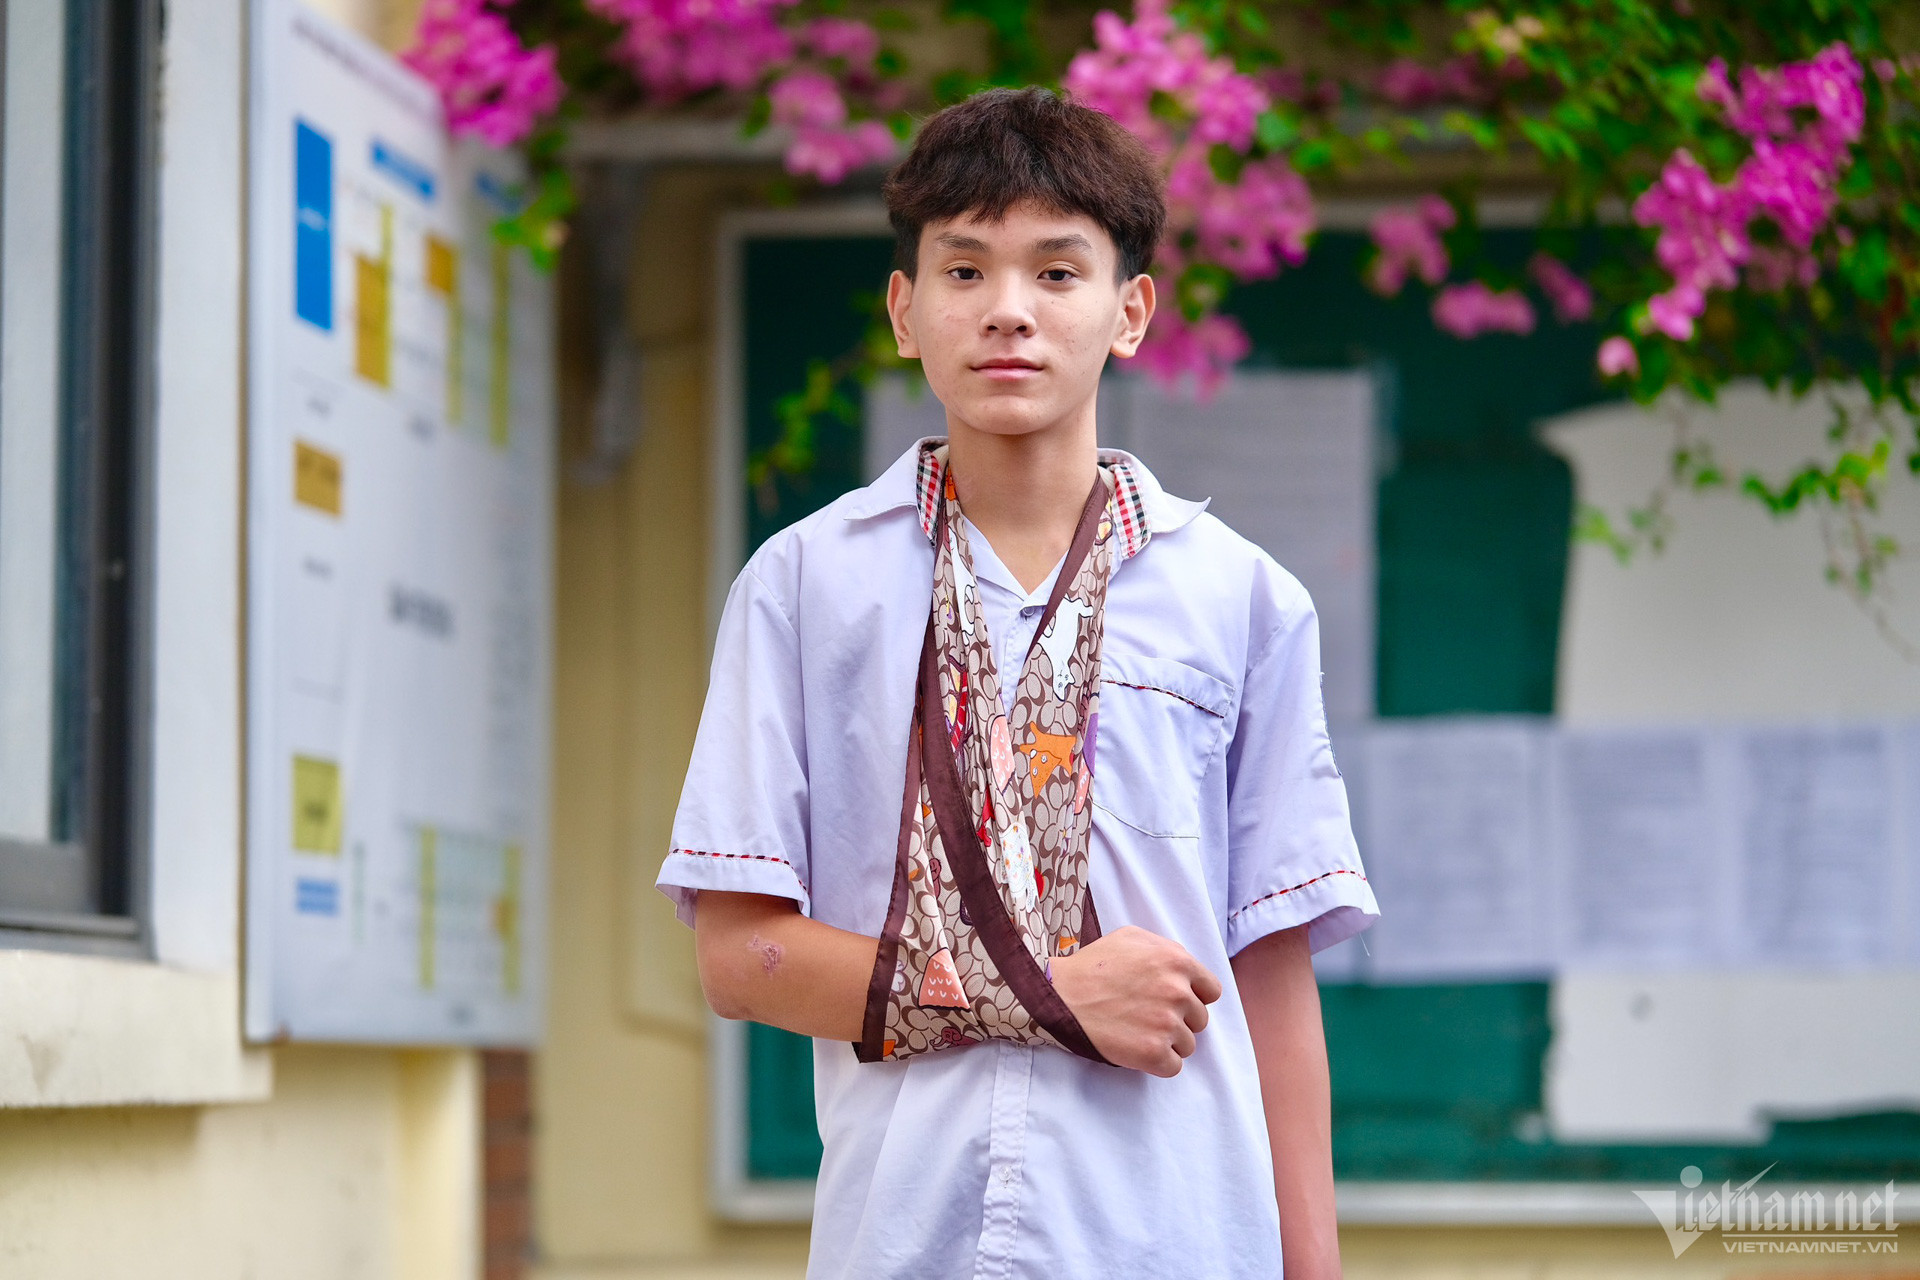 Nghị lực của các thí sinh 'đặc biệt' vào lớp 10 ở Hà Nội: Người nén đau dự thi, người được bố trí học sinh khác chép bài hộ - Ảnh 2